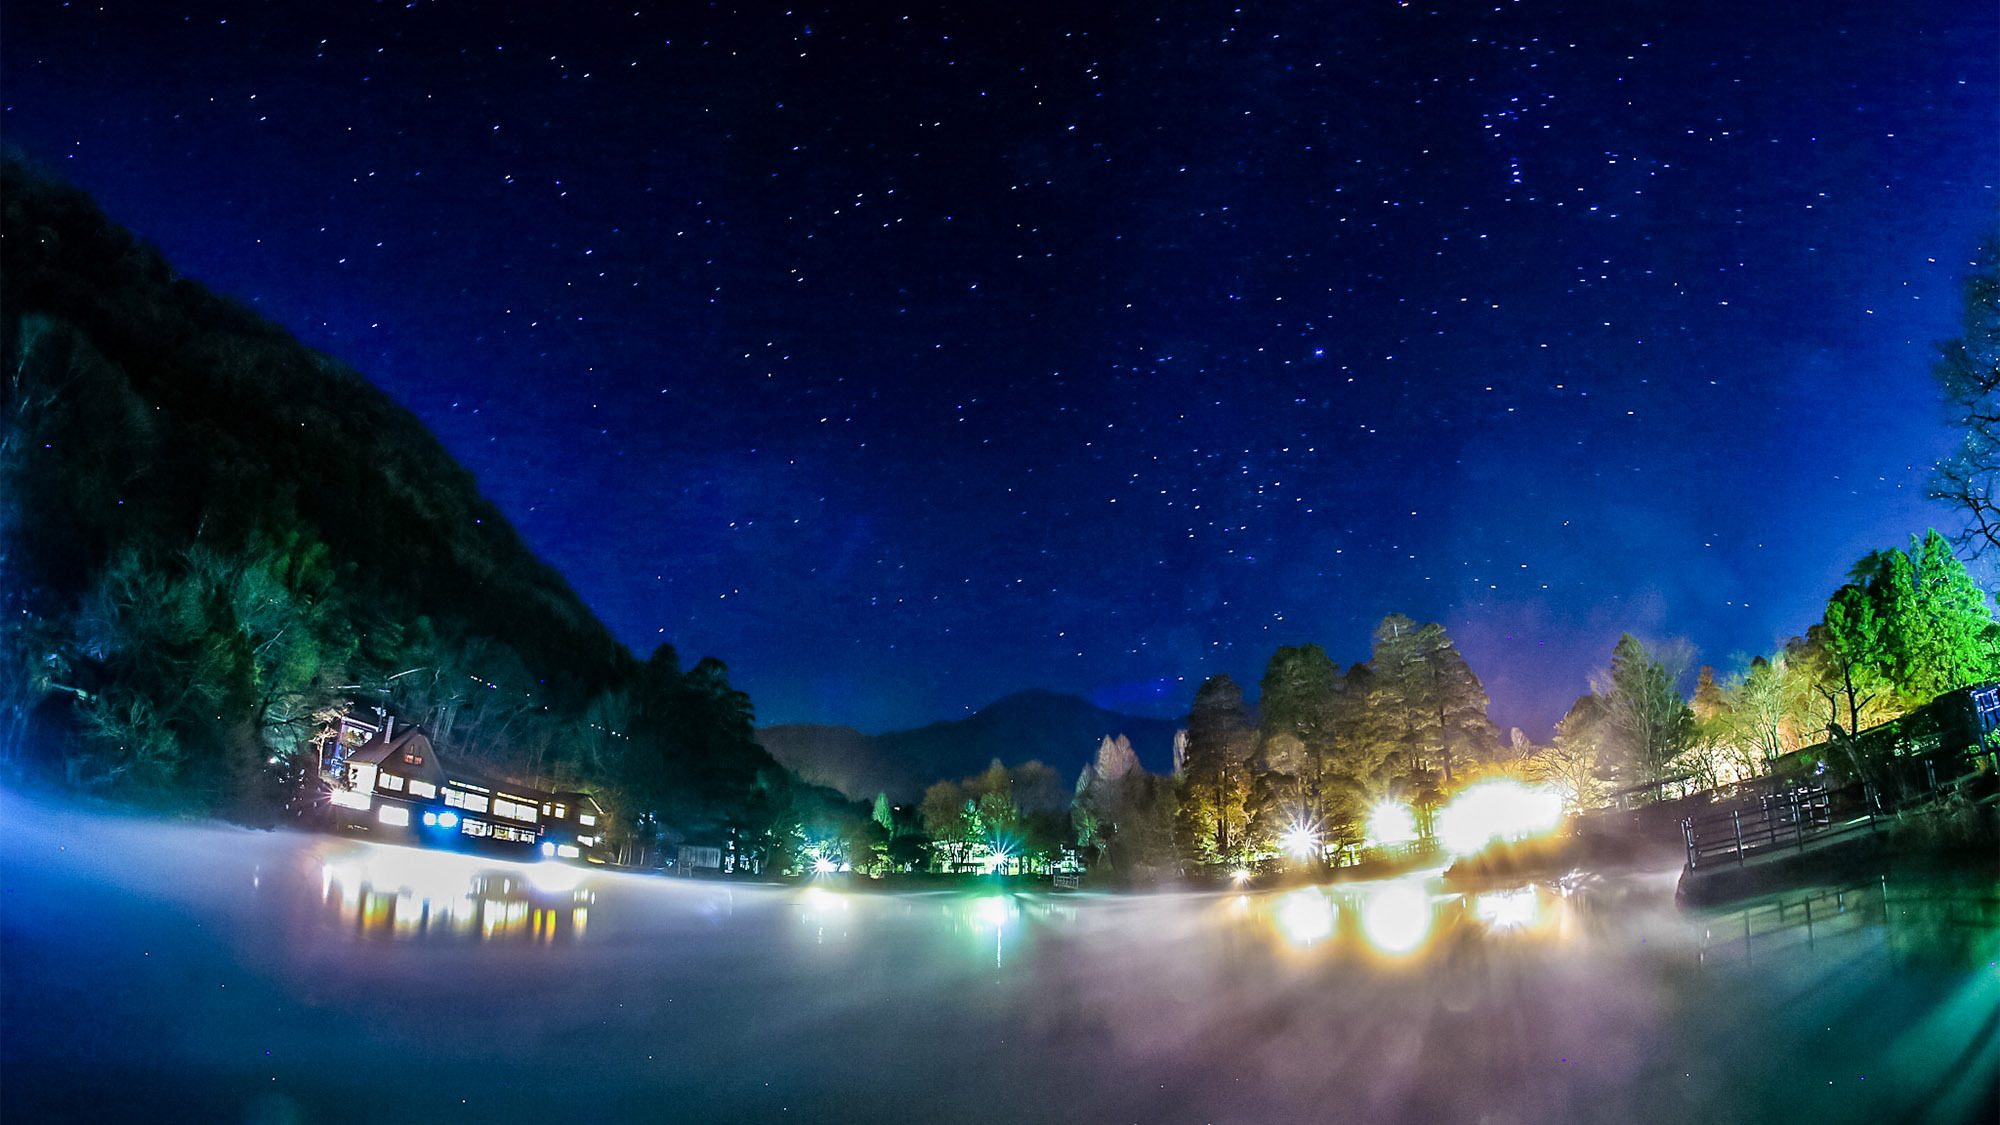 ・夜には金鱗湖上空に澄んだ星空が広がり、幻想的な雰囲気に